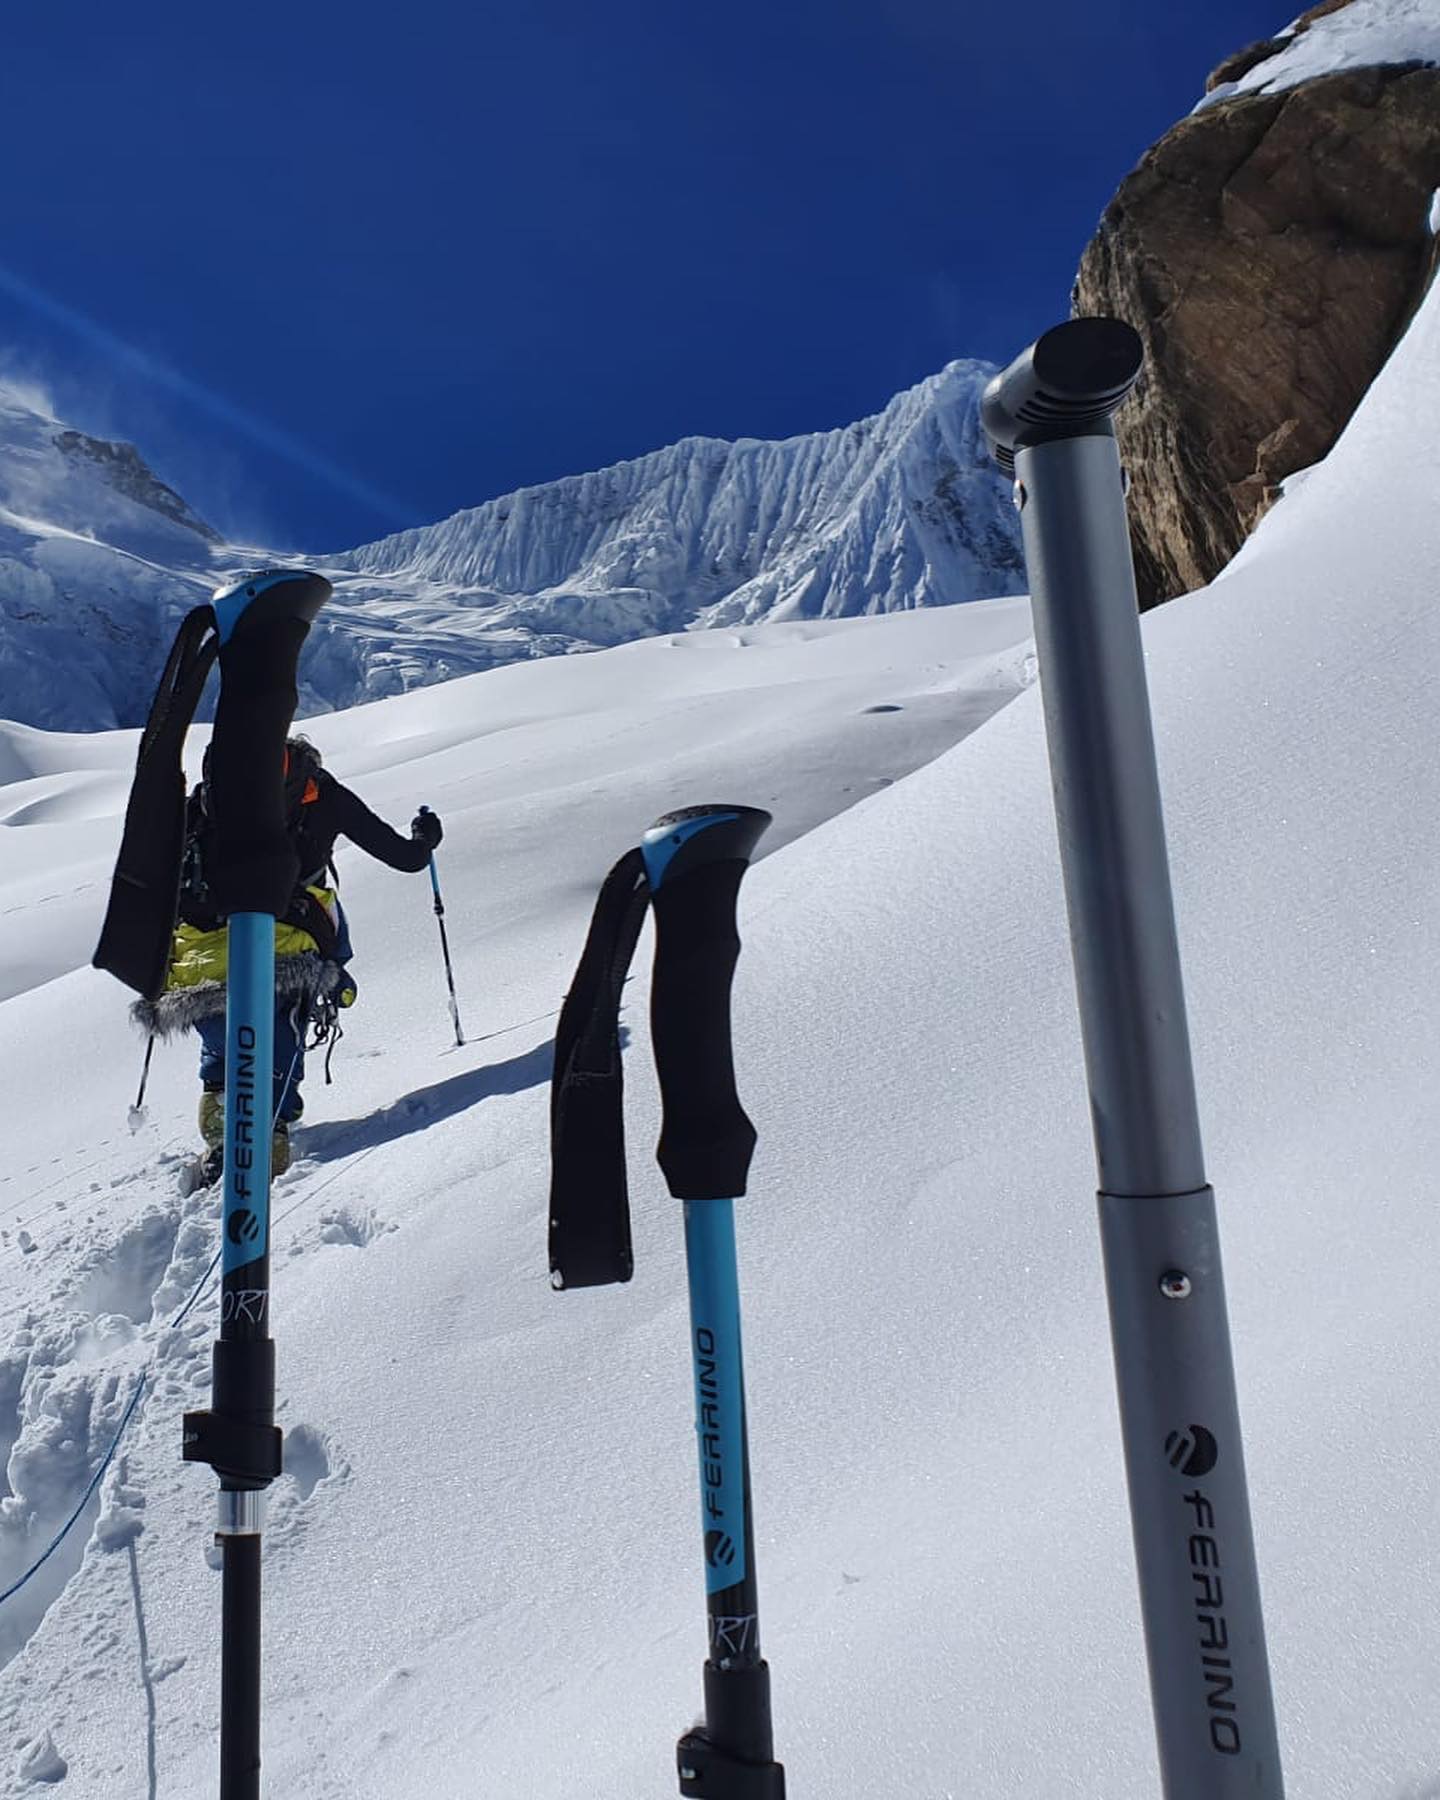 Алекс Тикон (Alex Txikon), Иньяки Альварез (Inaki Alvarez), Чеппал Шерпа (Cheppal Sherpa)  - работа на Манаслу до отметки 5400 метров. 31 декабря 2021 года. Фото Alex Txikon